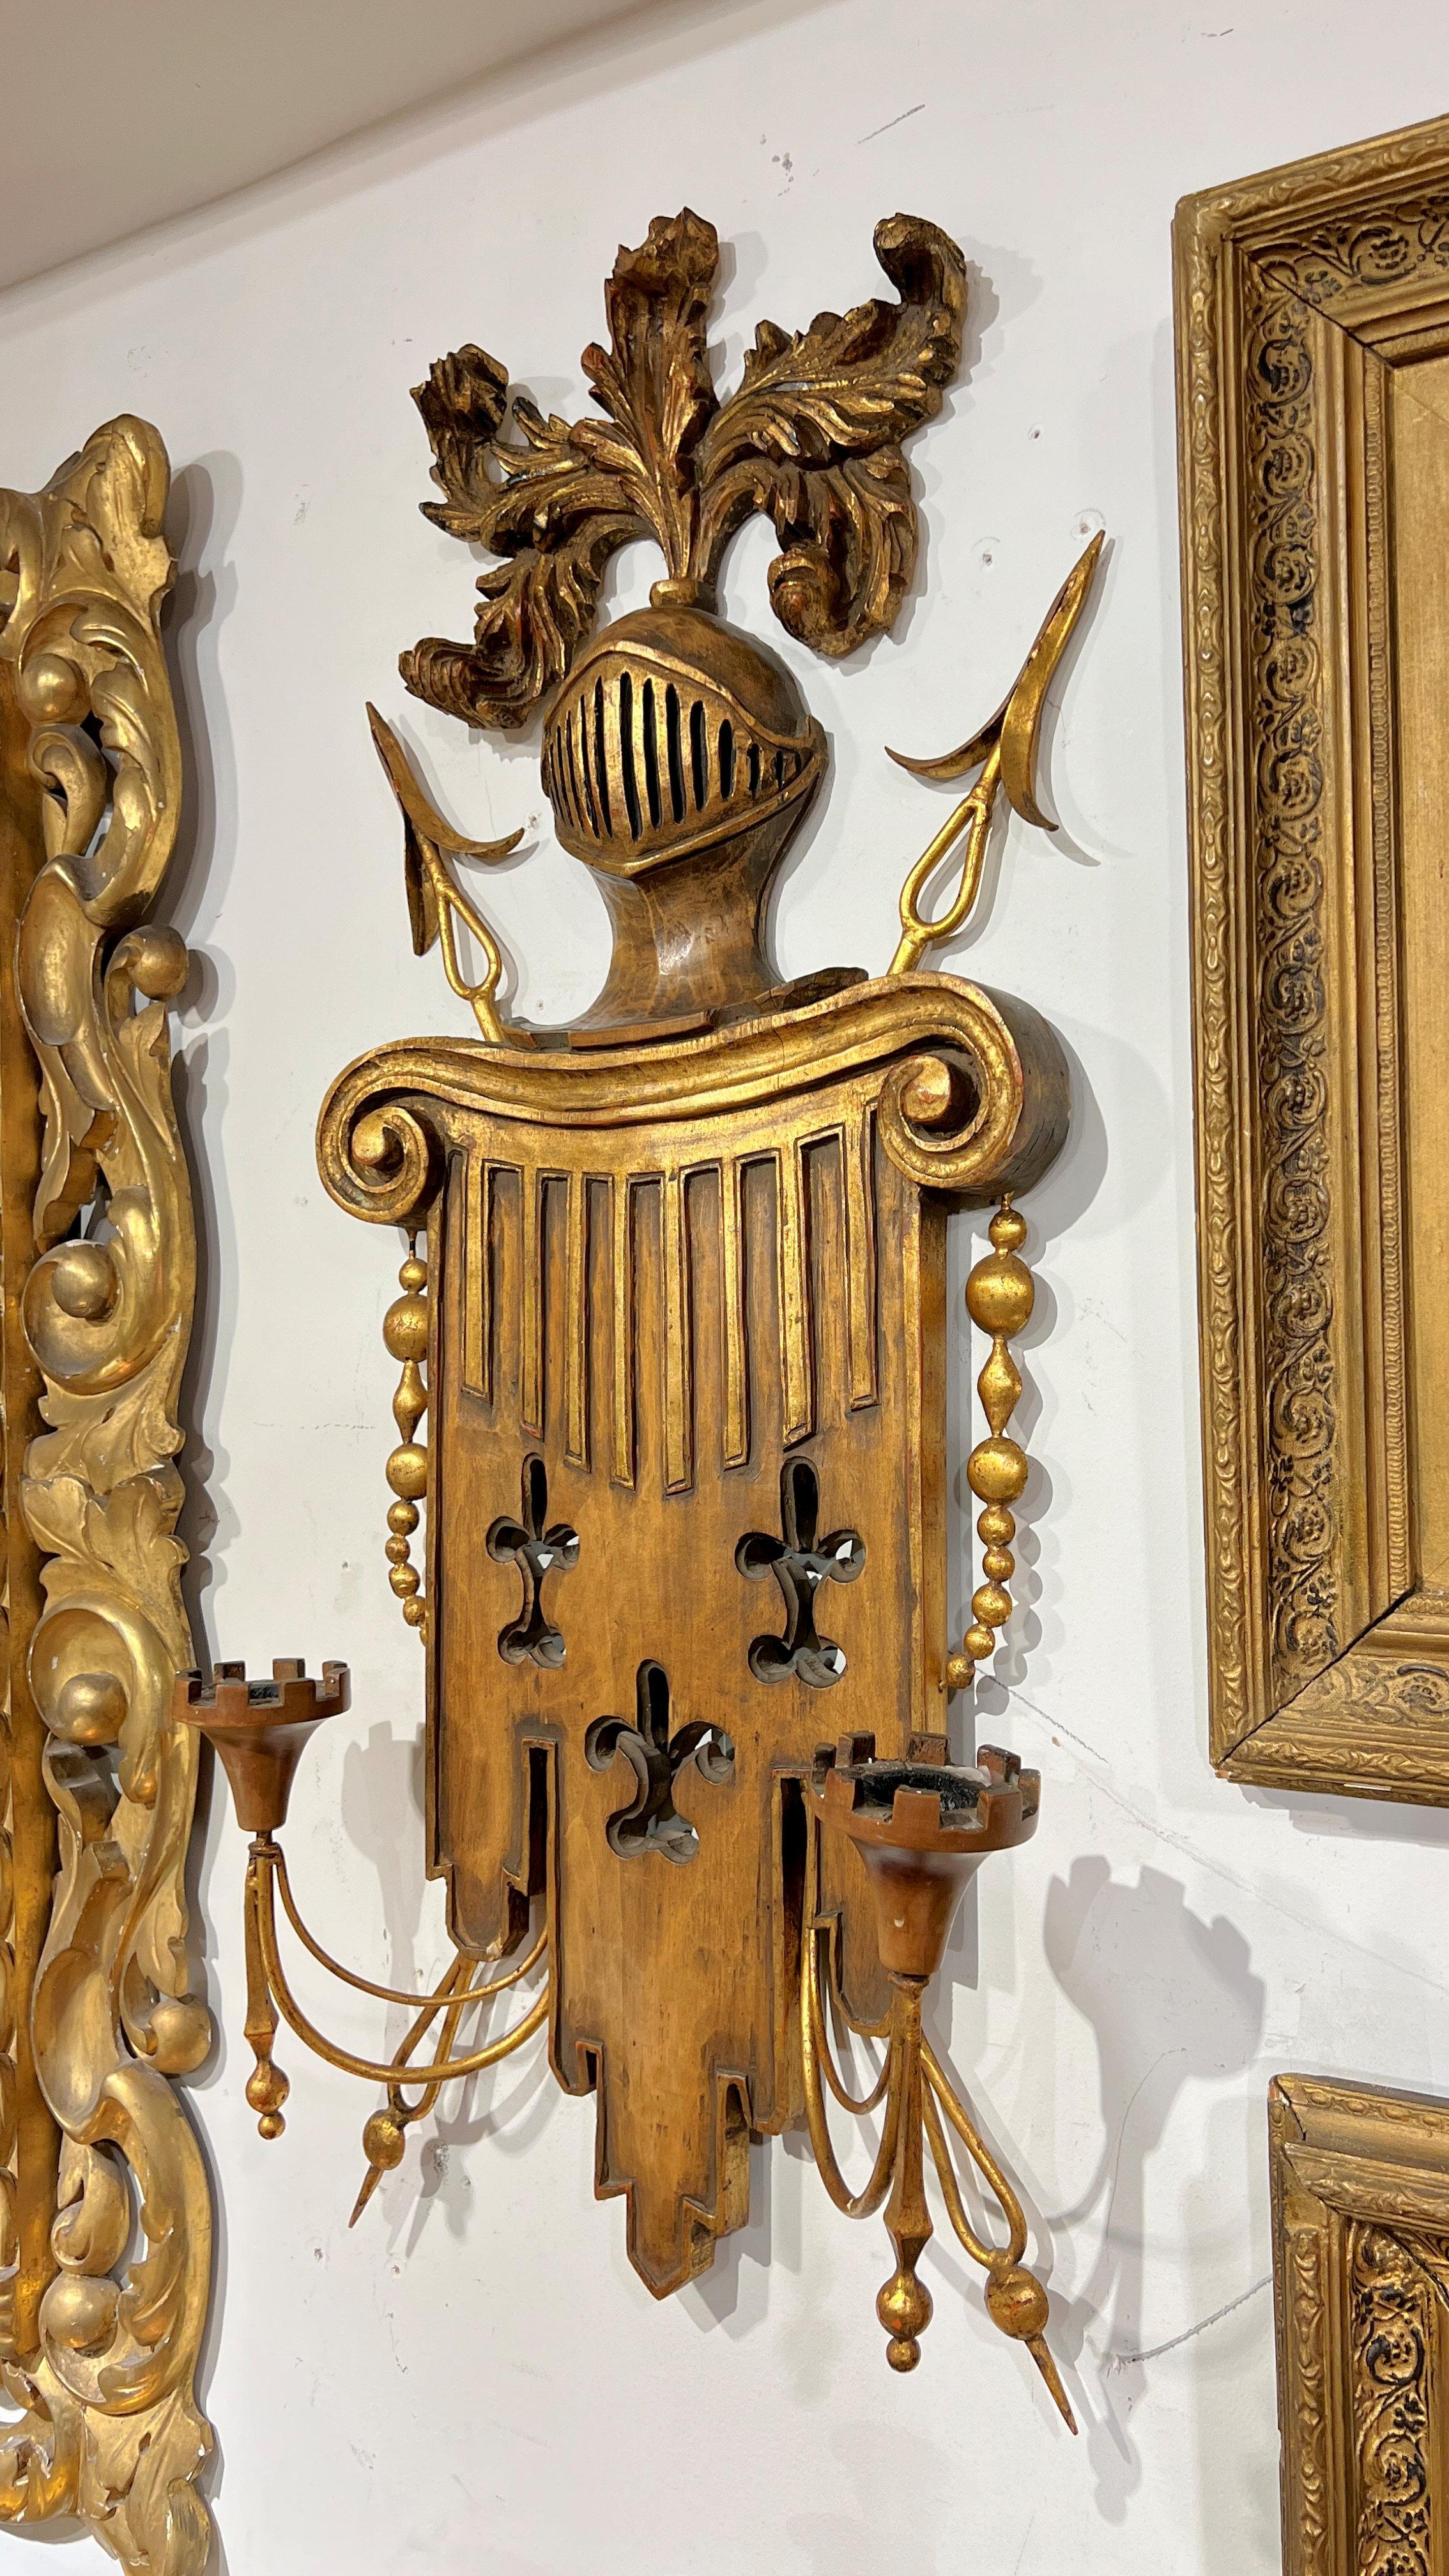 Zwei geschnitzte und vergoldete Vintage-Wandleuchter aus Metall im gotischen Stil mit kunstvoll geschnitzten Rückseiten in Form einer Säule mit Fleur-de-Lis und dorischem Kapitell, darüber ein Ritterhelm mit Federfedern, Schwertspitzen und zwei